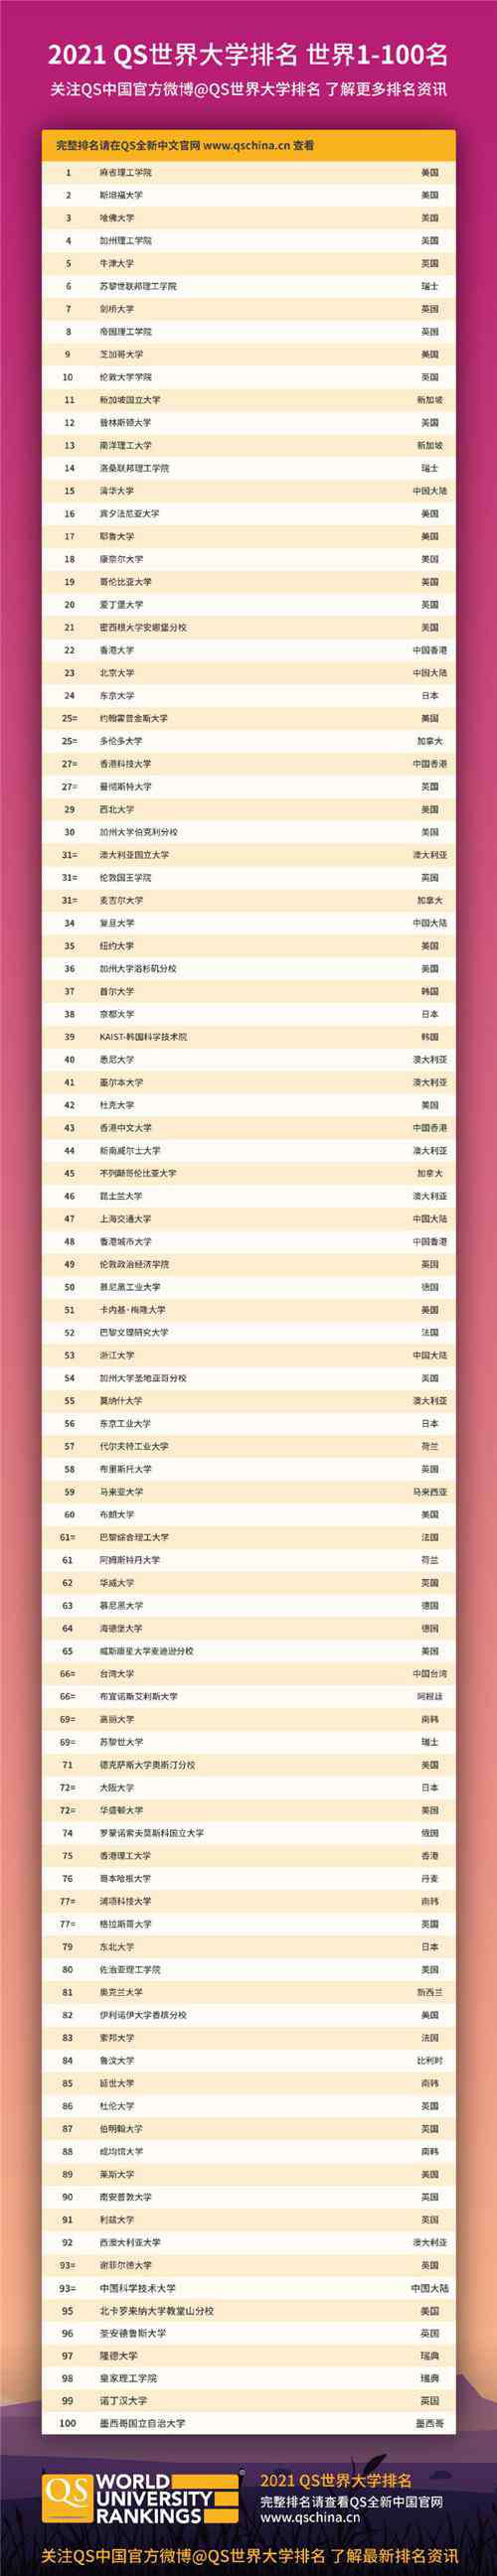 中国大学世界排名 最新QS世界大学排名发布：清华超耶鲁，再破中国大学记录